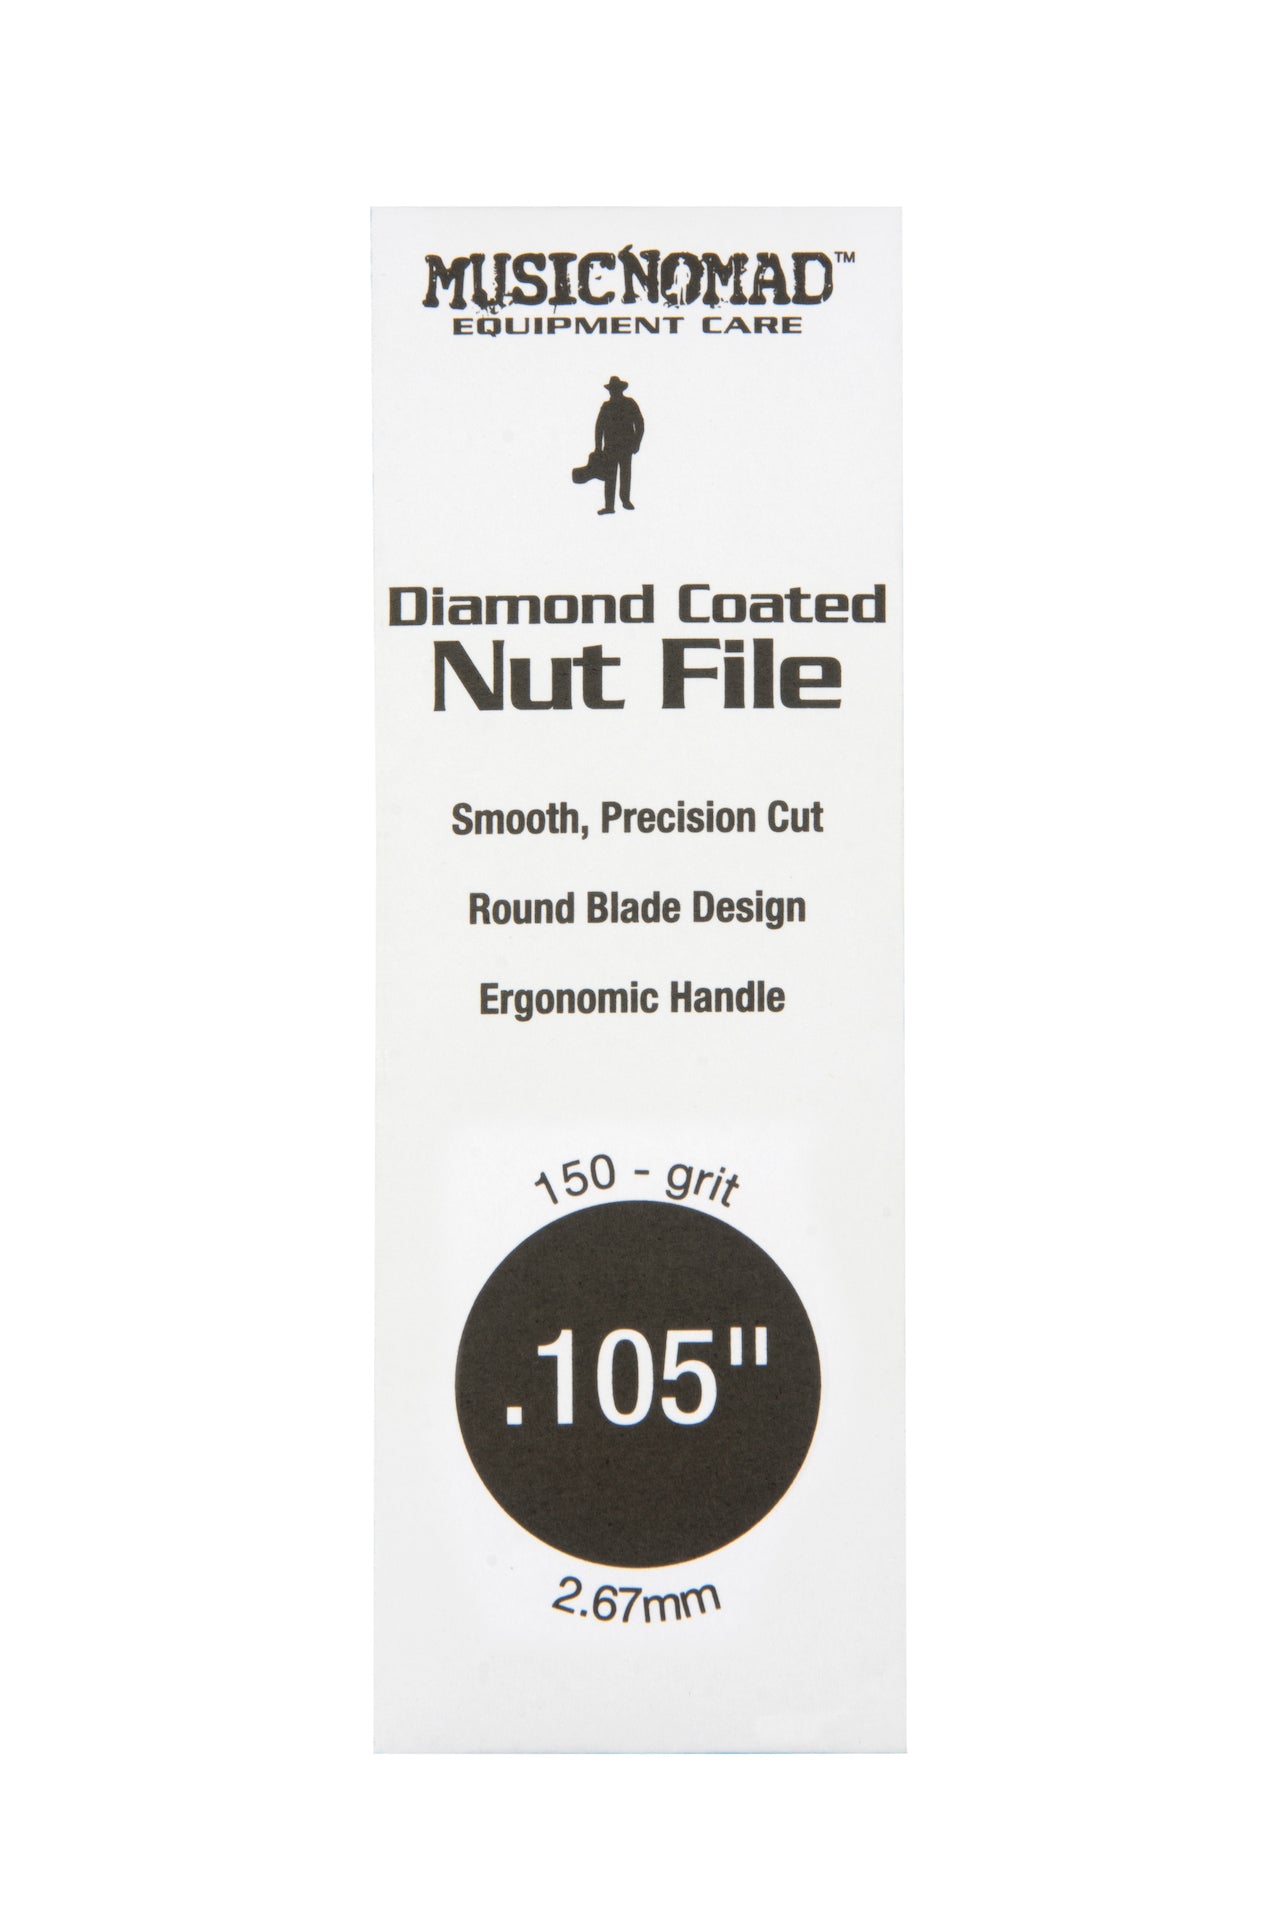 Music Nomad Diamond Coated Nut File Singles - HIENDGUITAR   musicnomad musicnomad